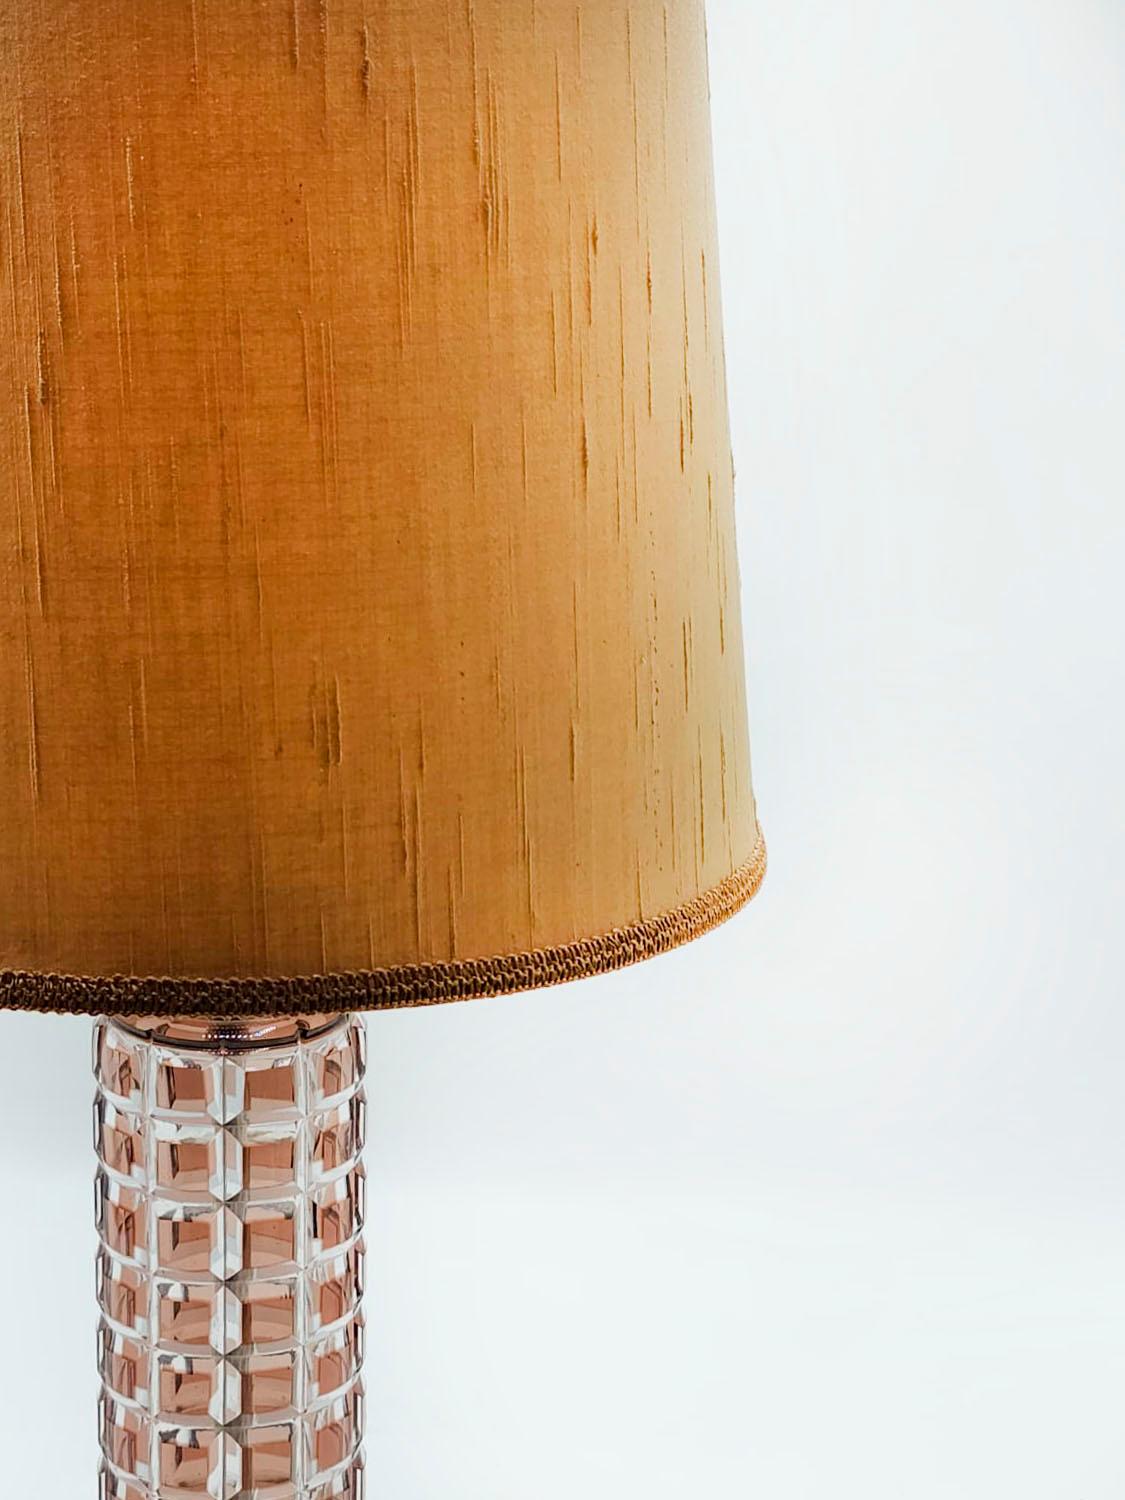 Lampe de table vintage art déco du 20ème siècle

Lampe vintage en verre taillé et bronze doré, avec usure de la dorure au fil du temps, style anglais du début du 20e siècle.

Mesures :
Hauteur : 28.5 centimètre
Diamètre : 9.5 centimètres

¡Excellent